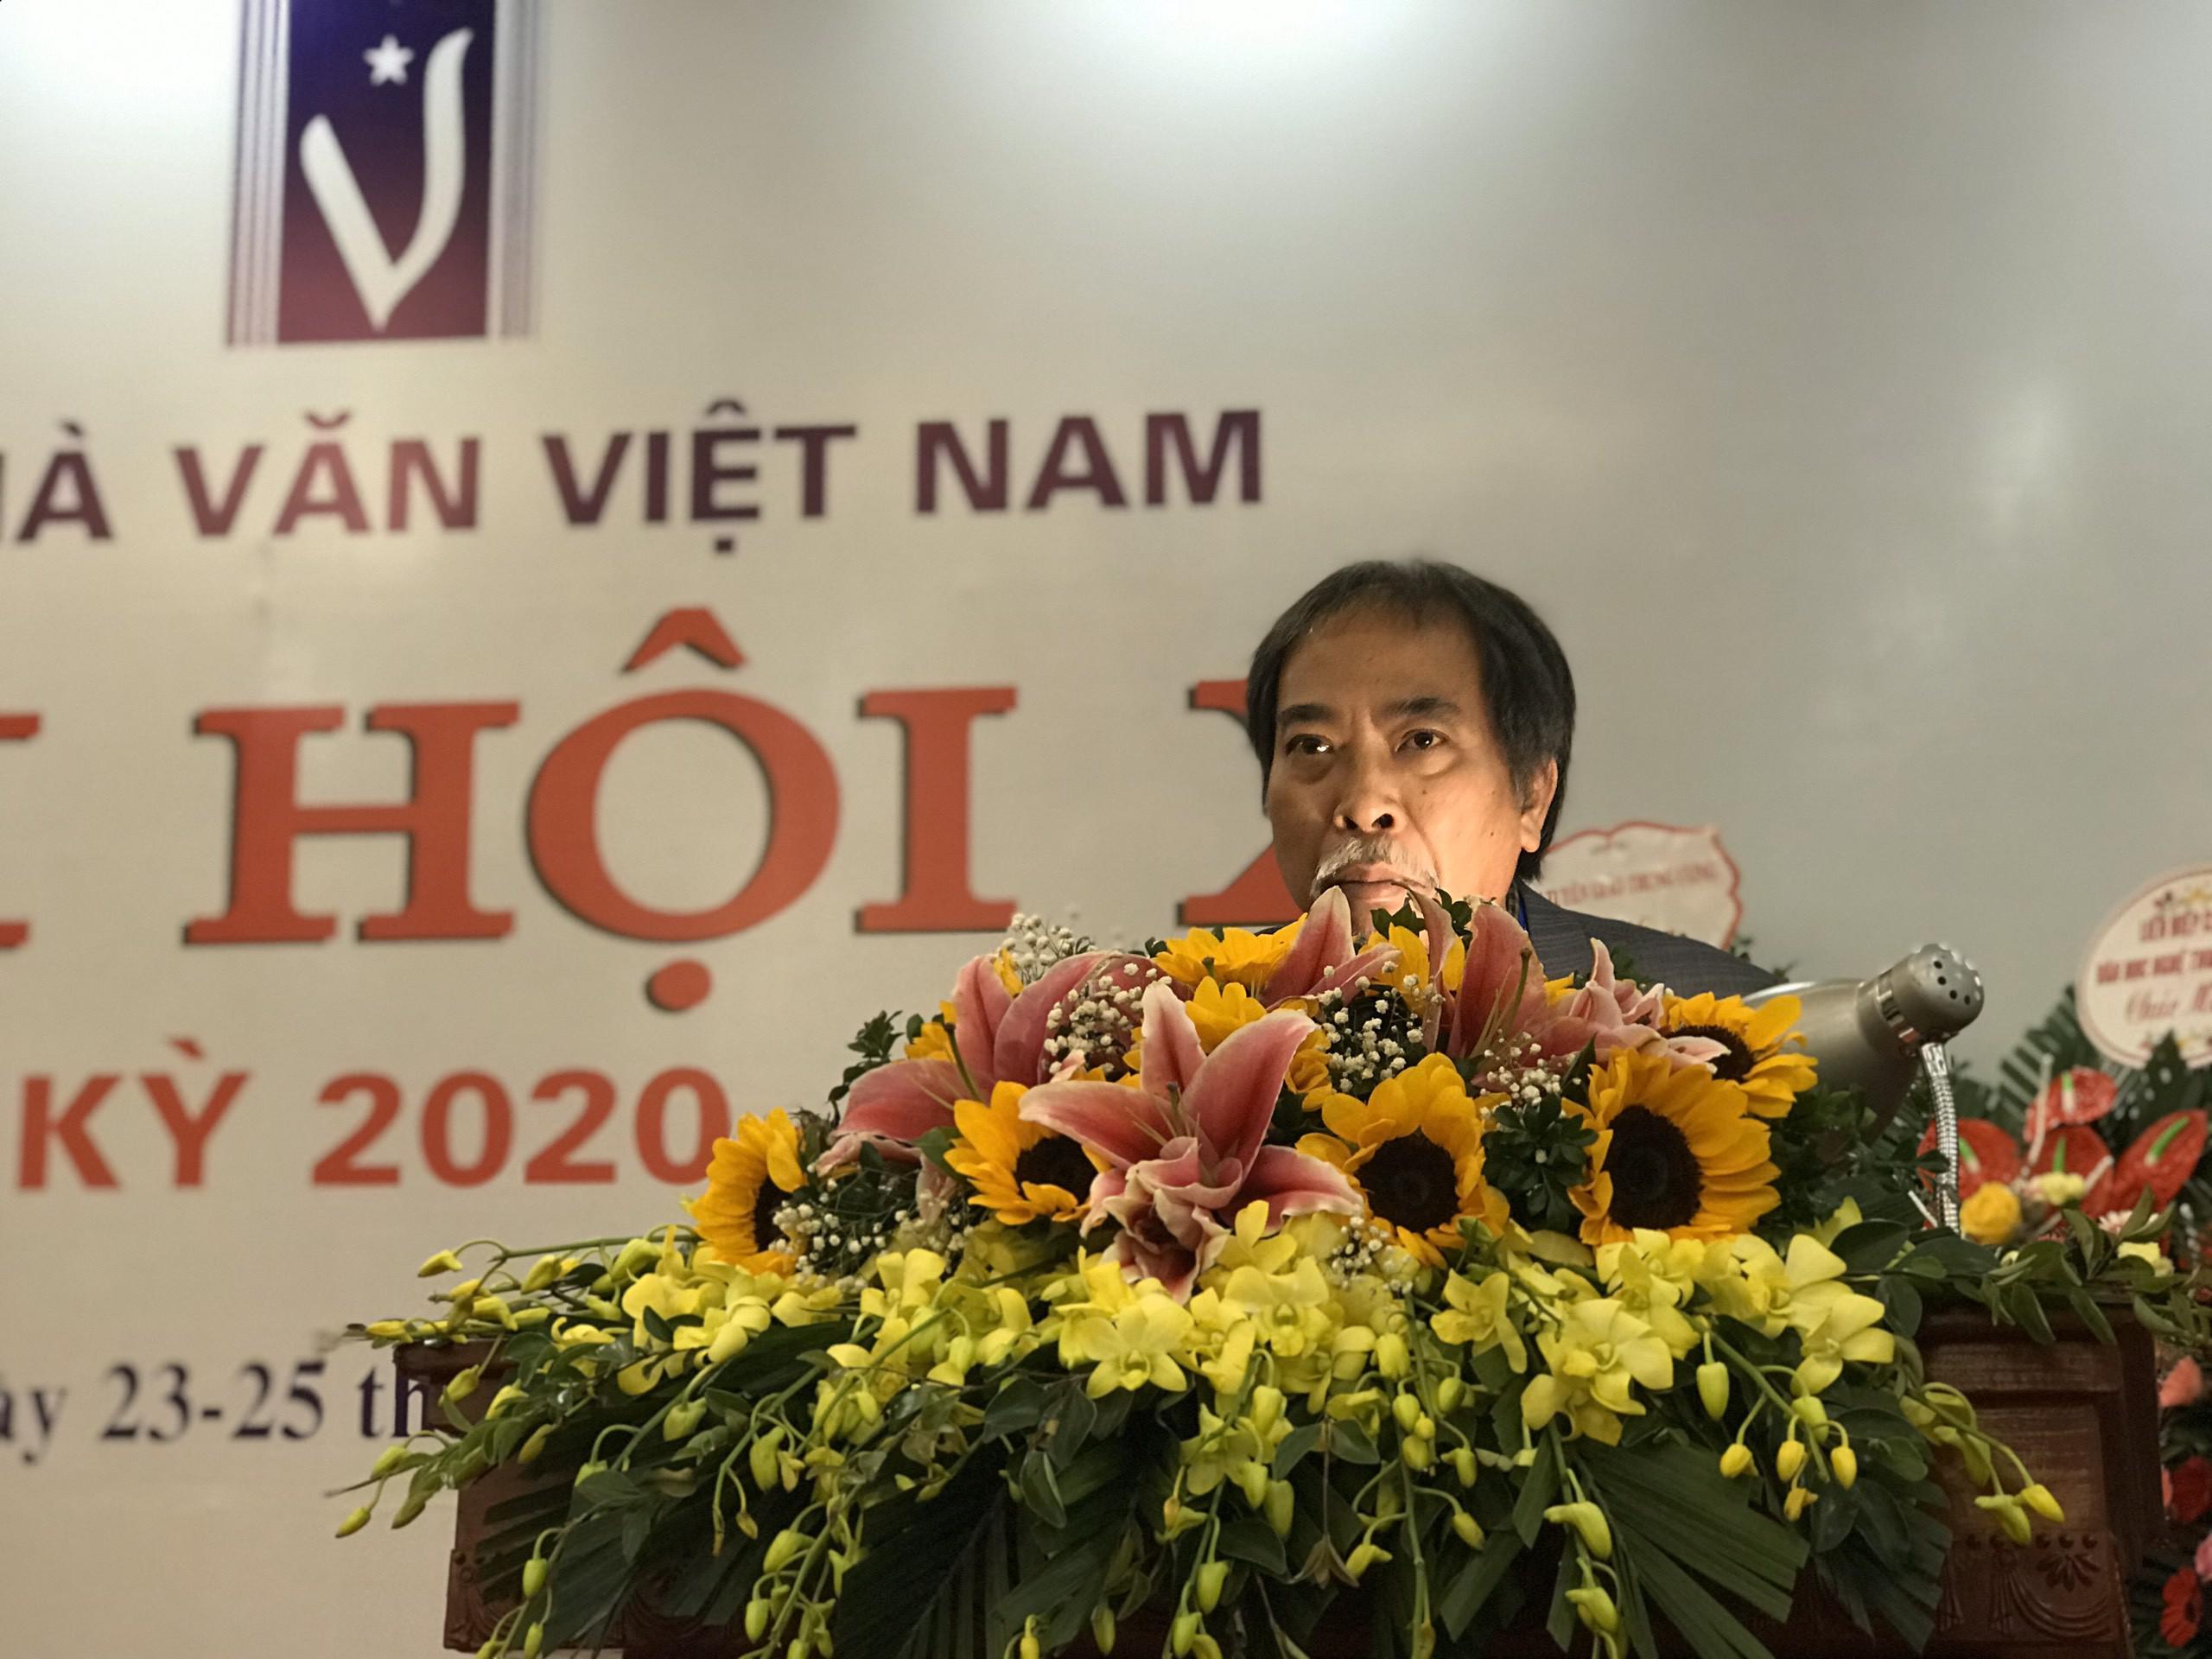 Tân chủ tịch Hội Nhà văn Nguyễn Quang Thiều: “Cuộc chuyển giao thế hệ rất đẹp, tôi không mong gì hơn thế” - 1